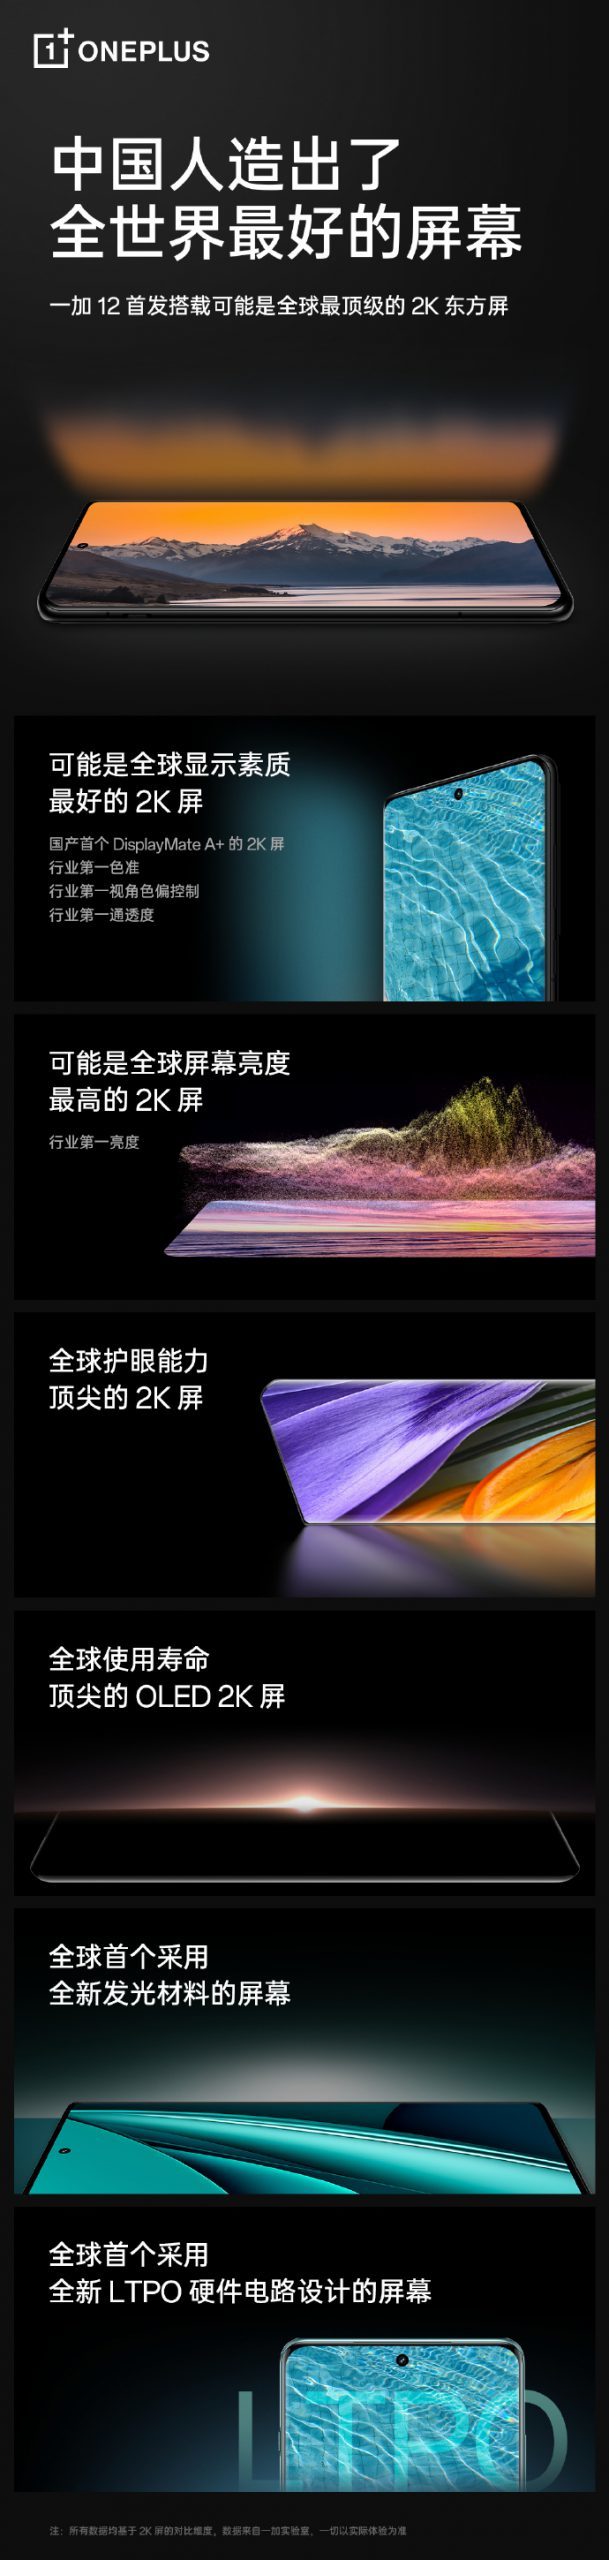 预热丨一加12 将提供三种配色、全球首发 2K OLED “东方屏”、巅峰影像